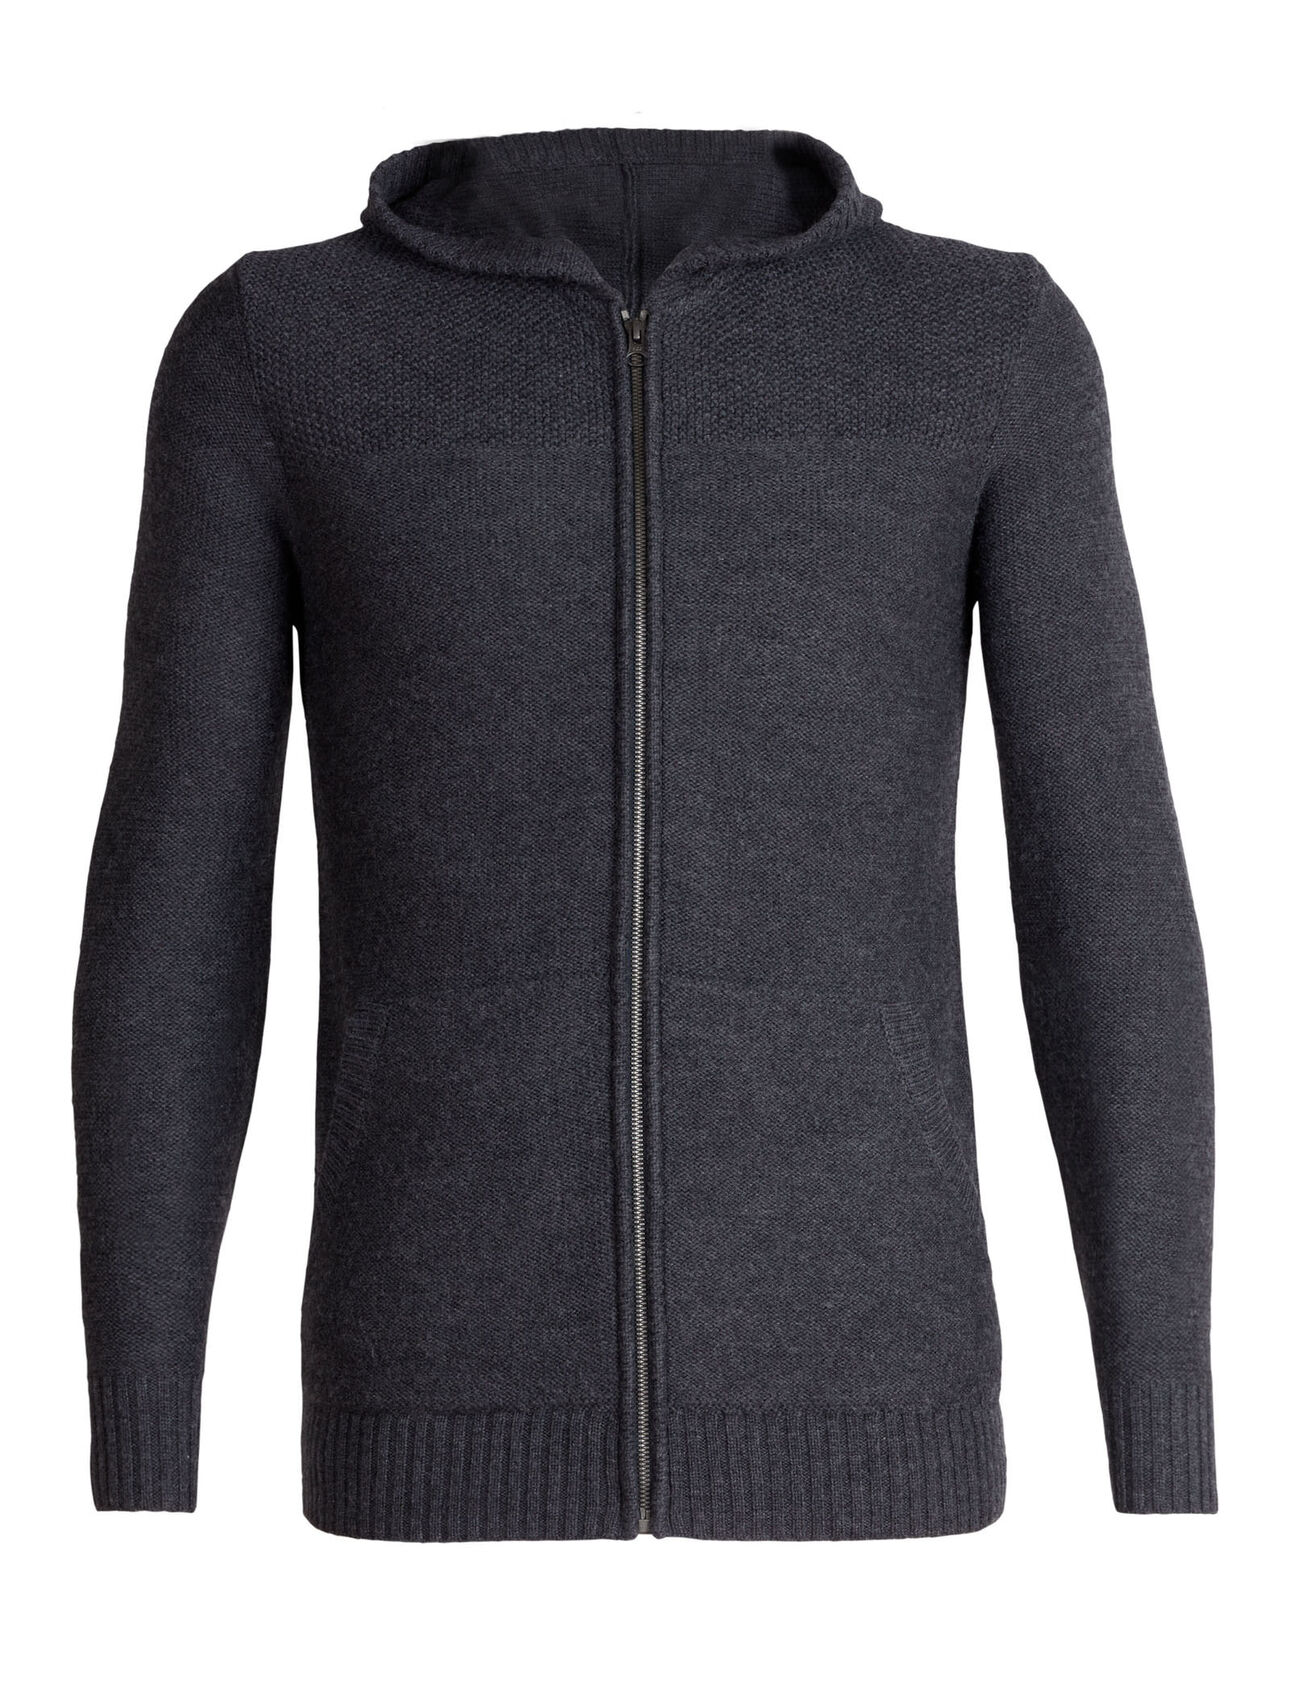 Waypoint Long Sleeve Zip Hood Sweater